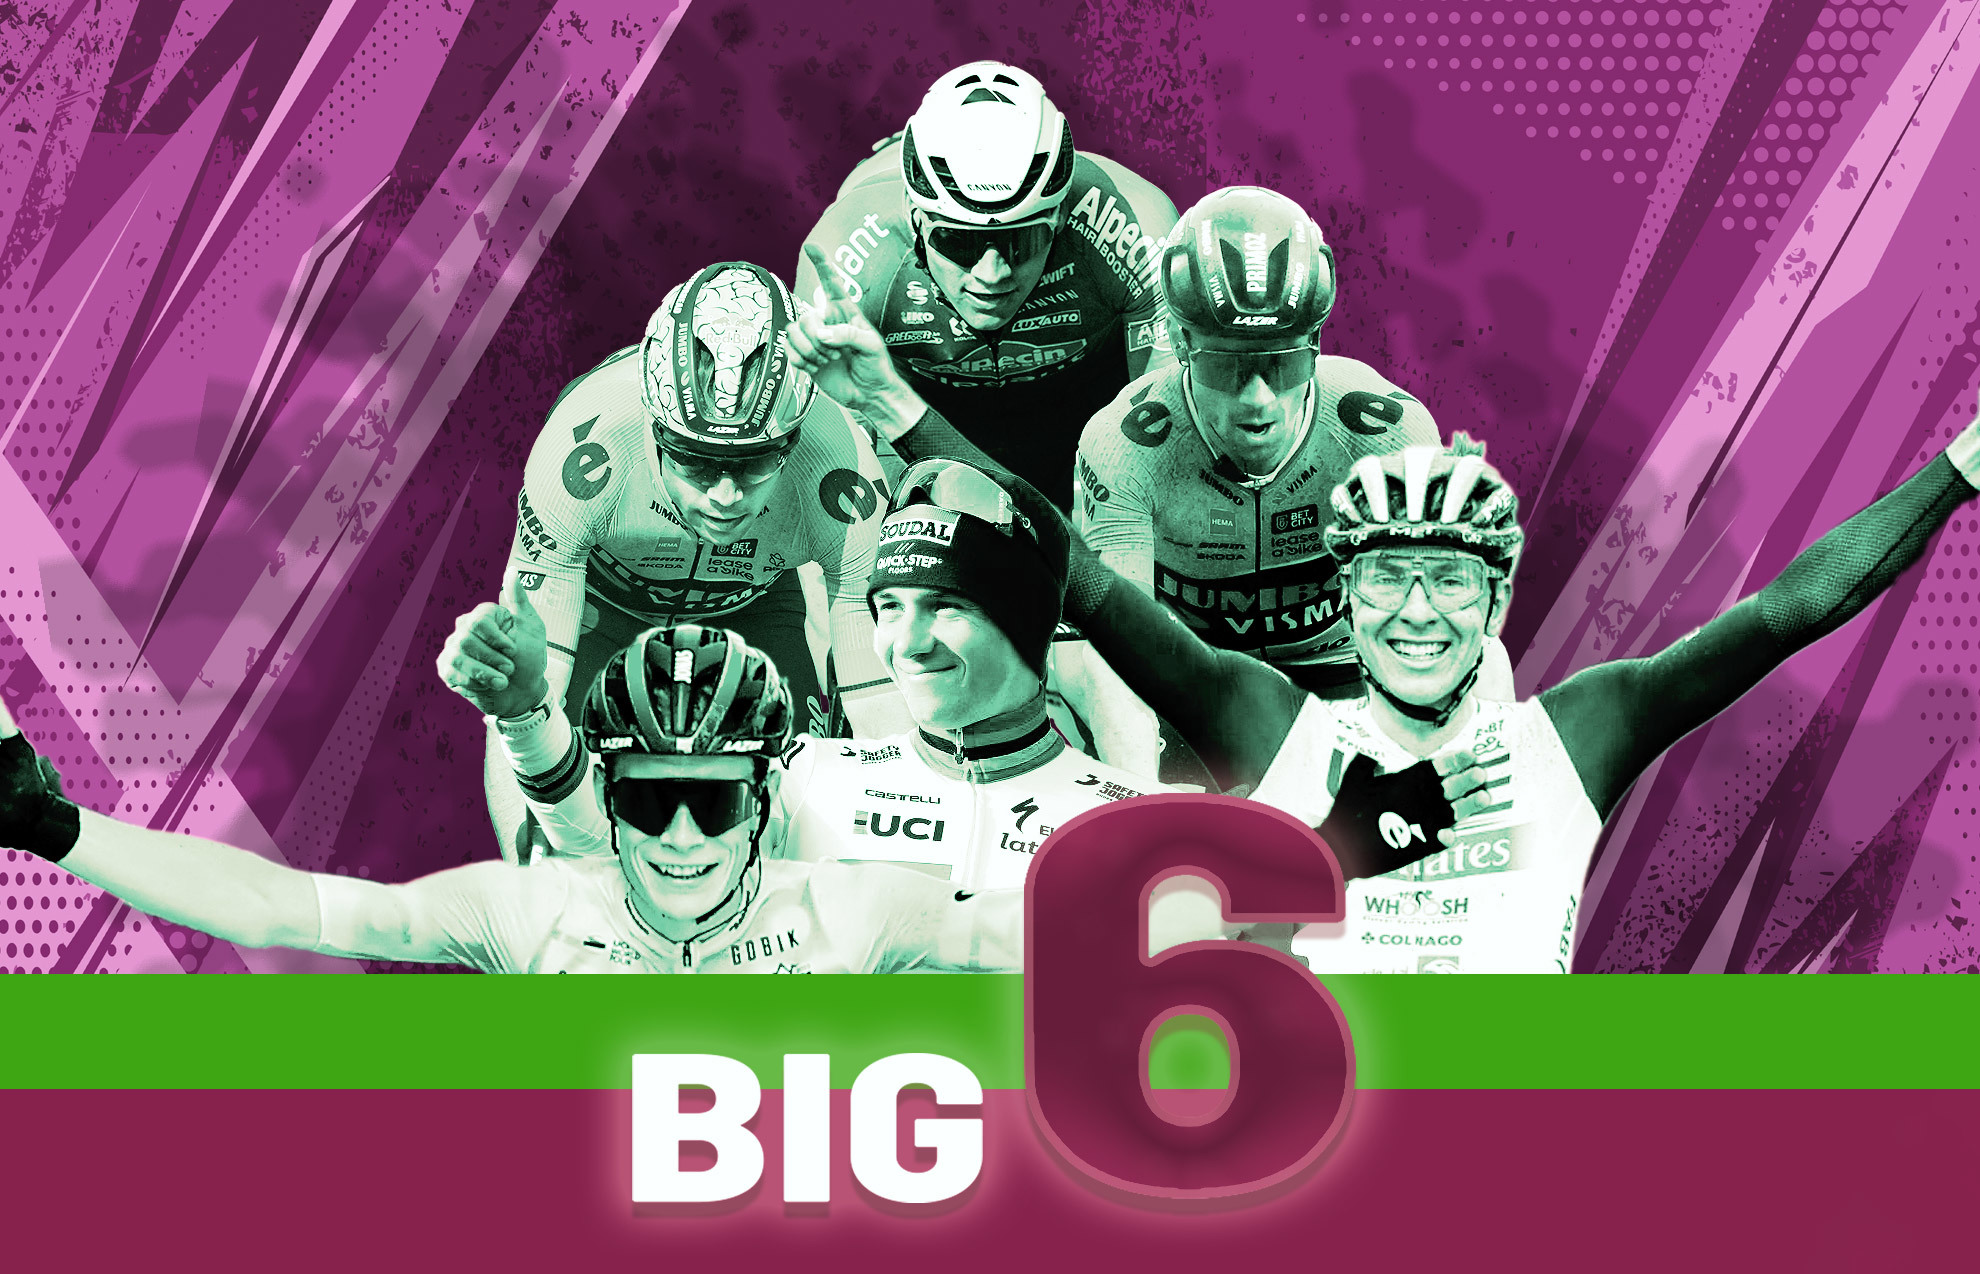 El Big 6 del ciclismo mundial: Vingegaard, Evenepoel, Van Aert, Van der Poel, Roglic y Pogacar